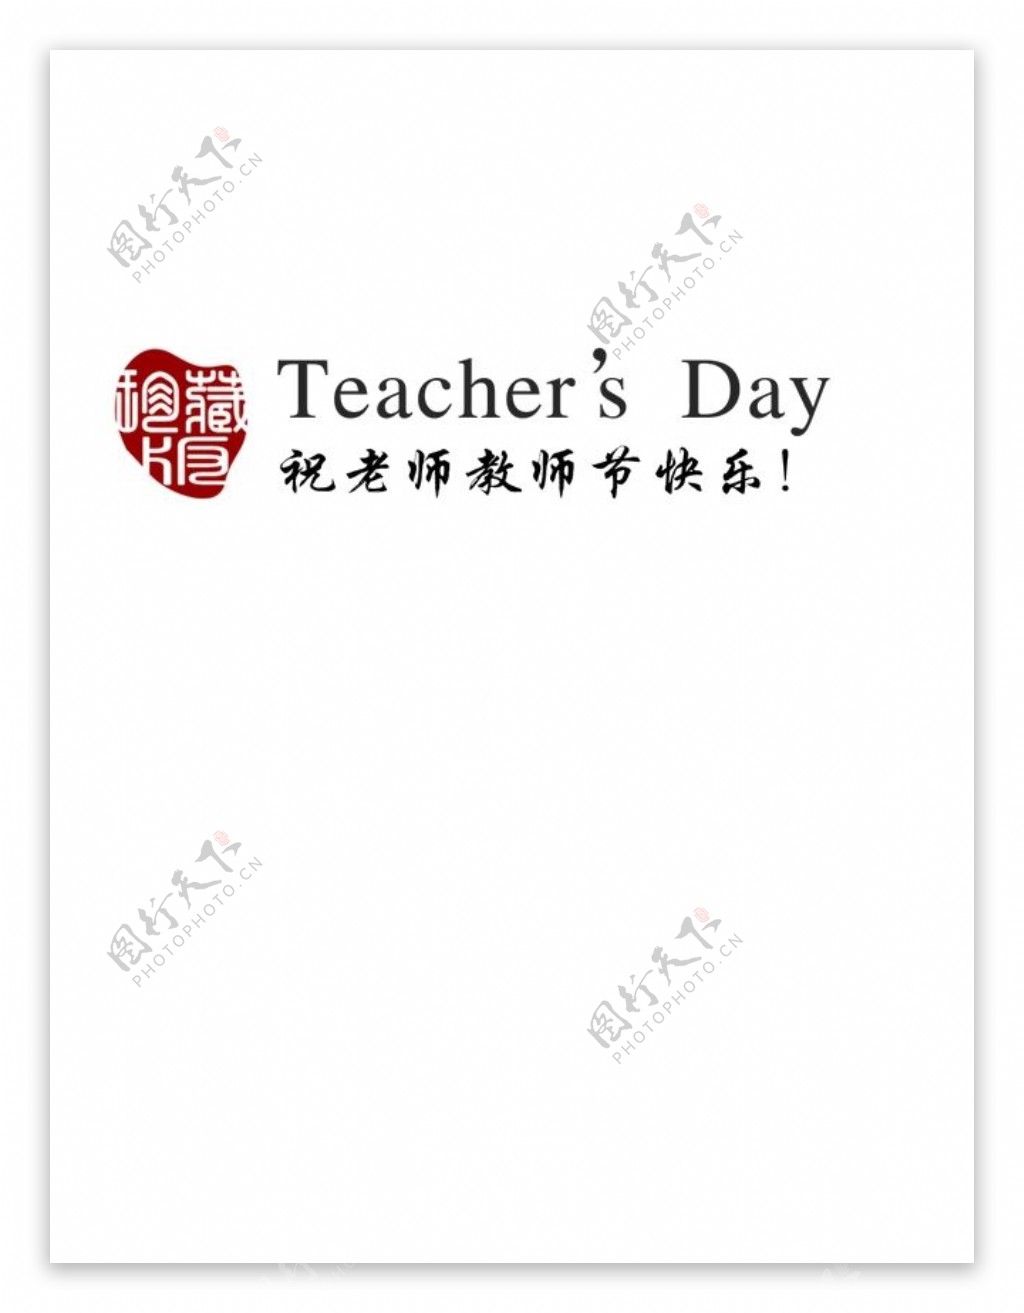 祝老师教师节快乐字体远